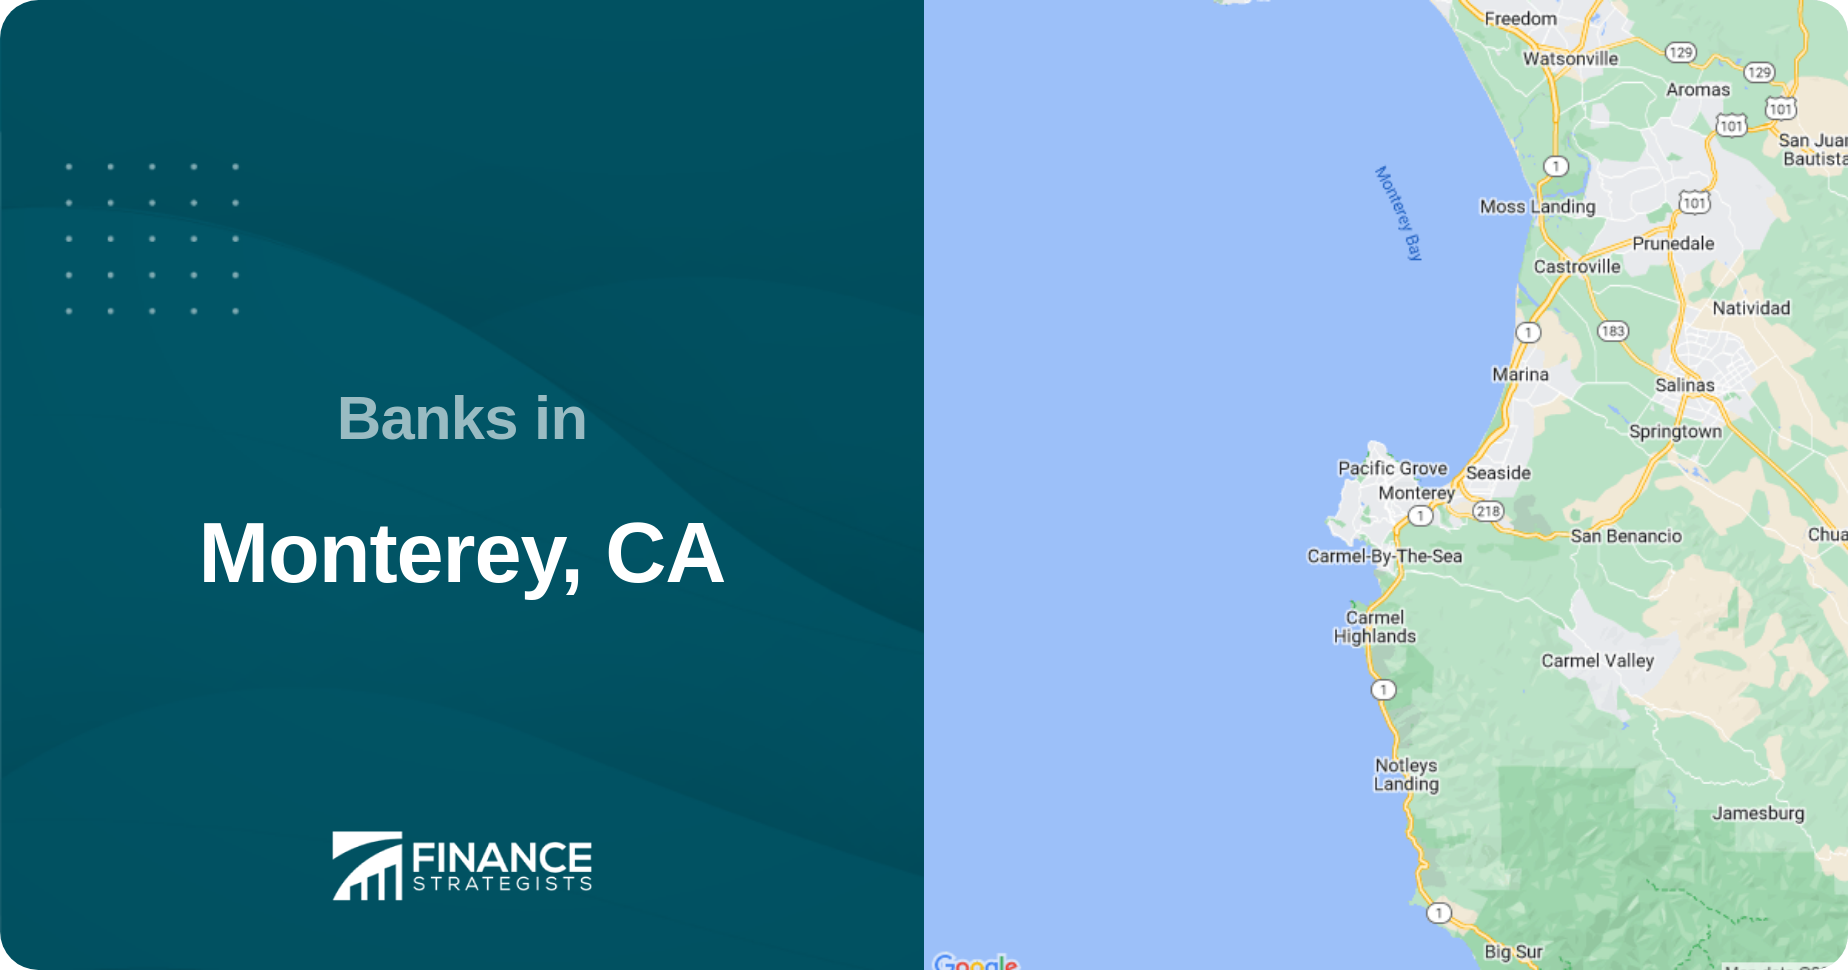 Banks in Monterey, CA